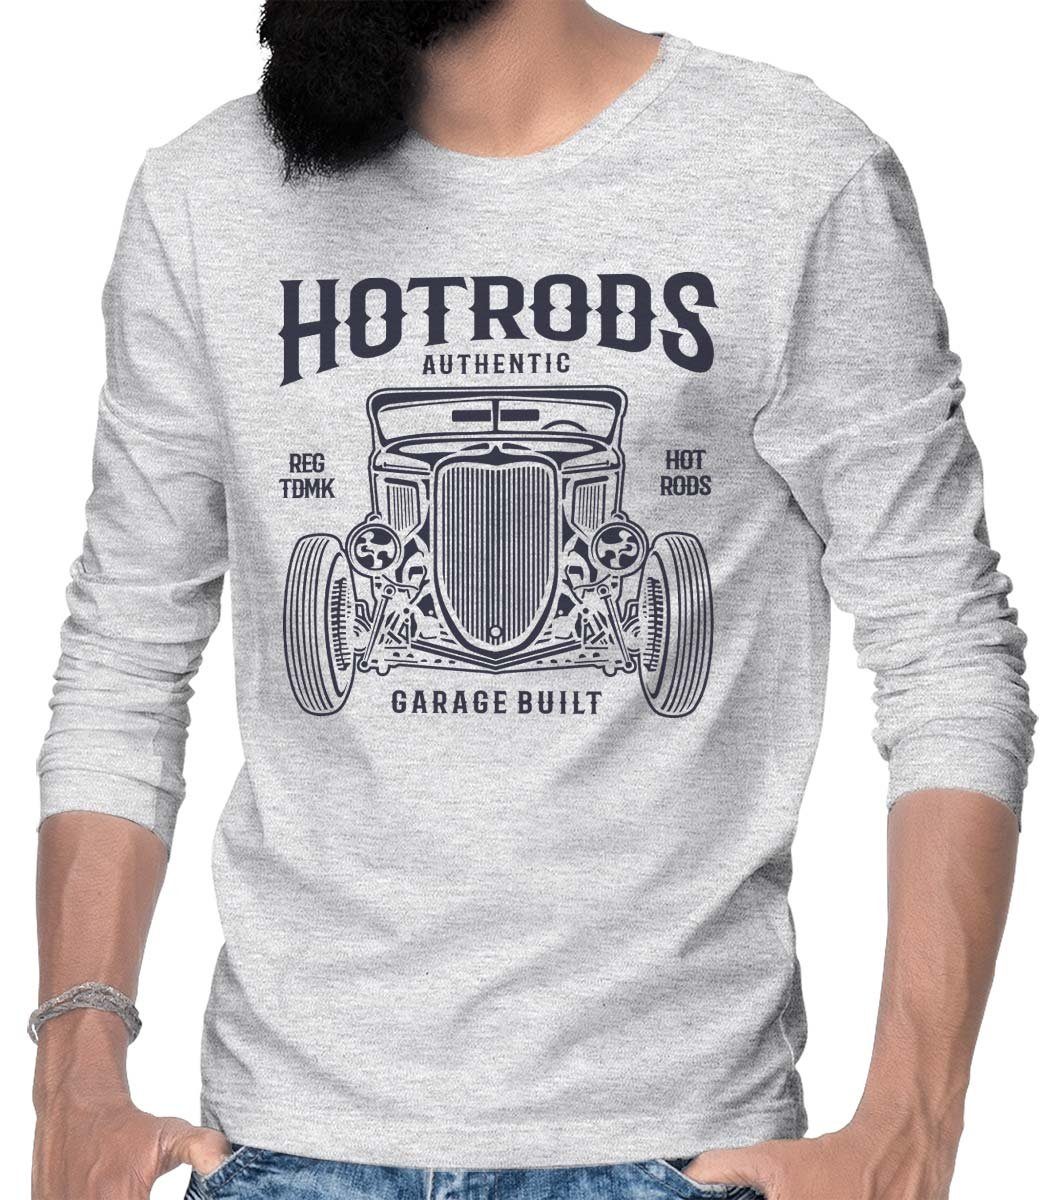 Rebel On Wheels Longsleeve Longsleeve Motiv / Grau Melange Hotrod T-Shirt Tee mit Hotrods HerrenLangarm US-Car